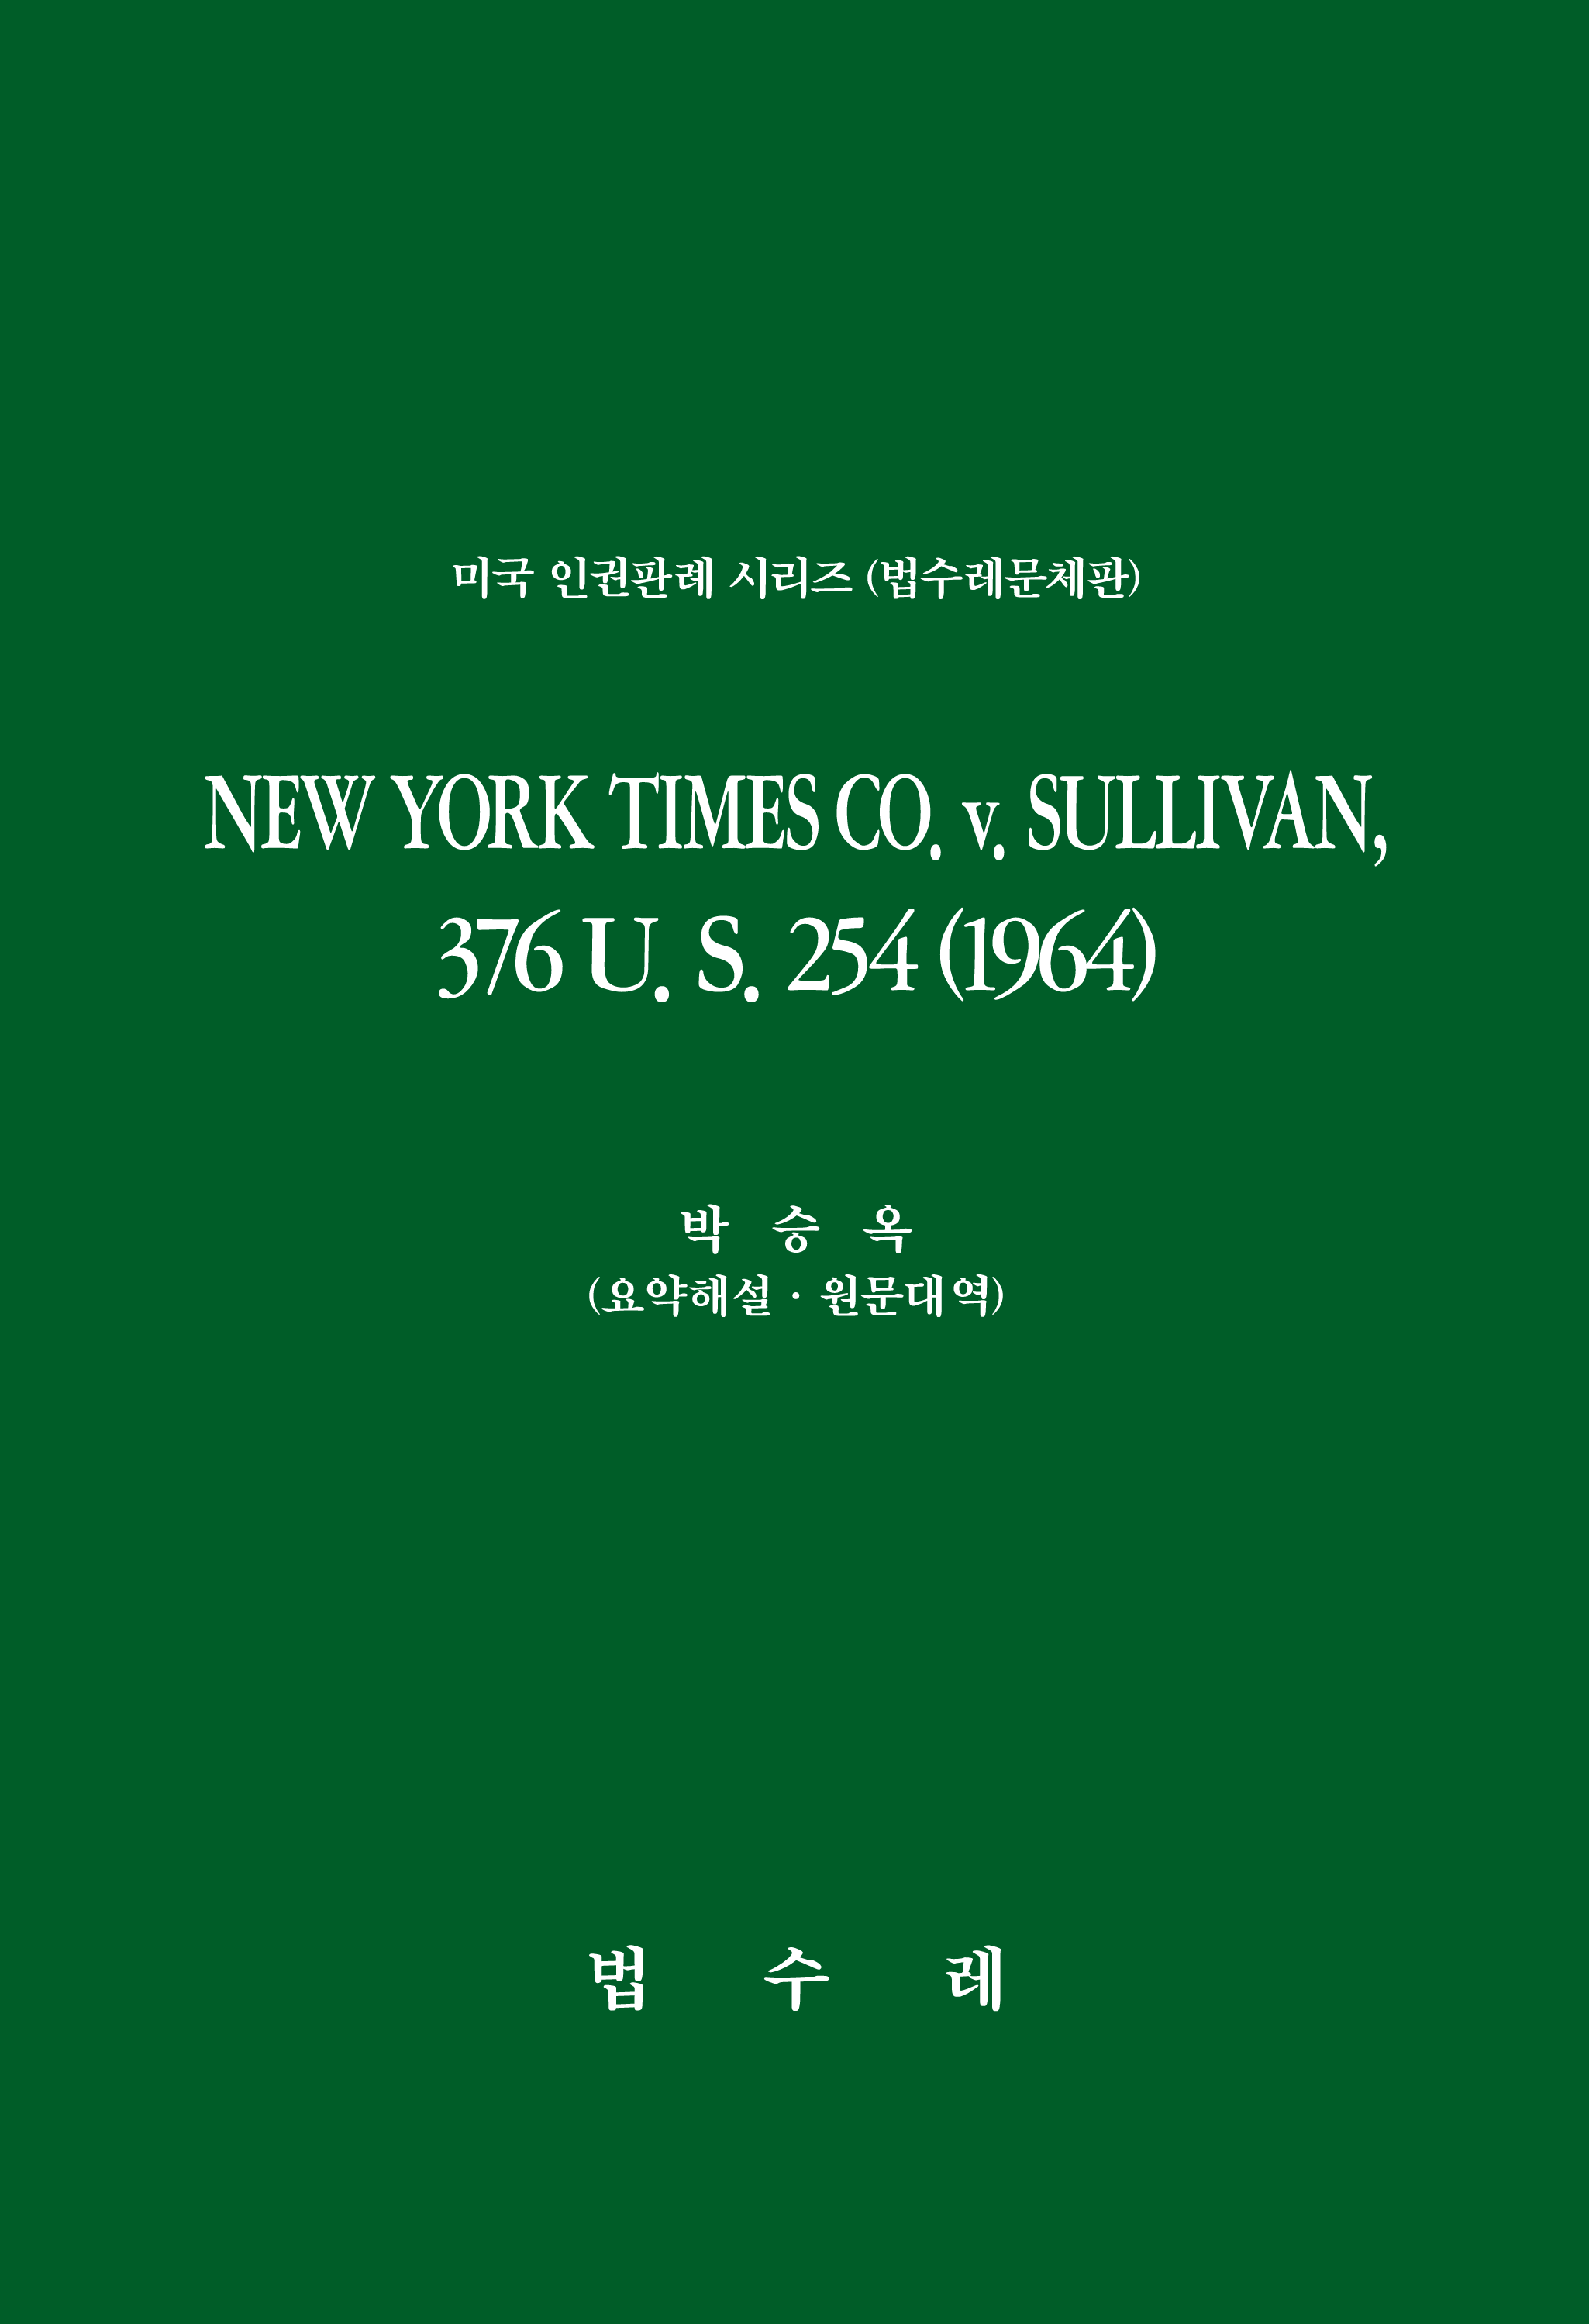 NEW YORK TIMES CO.v.SULLIVAN, 376 U. S. 254 (1964)